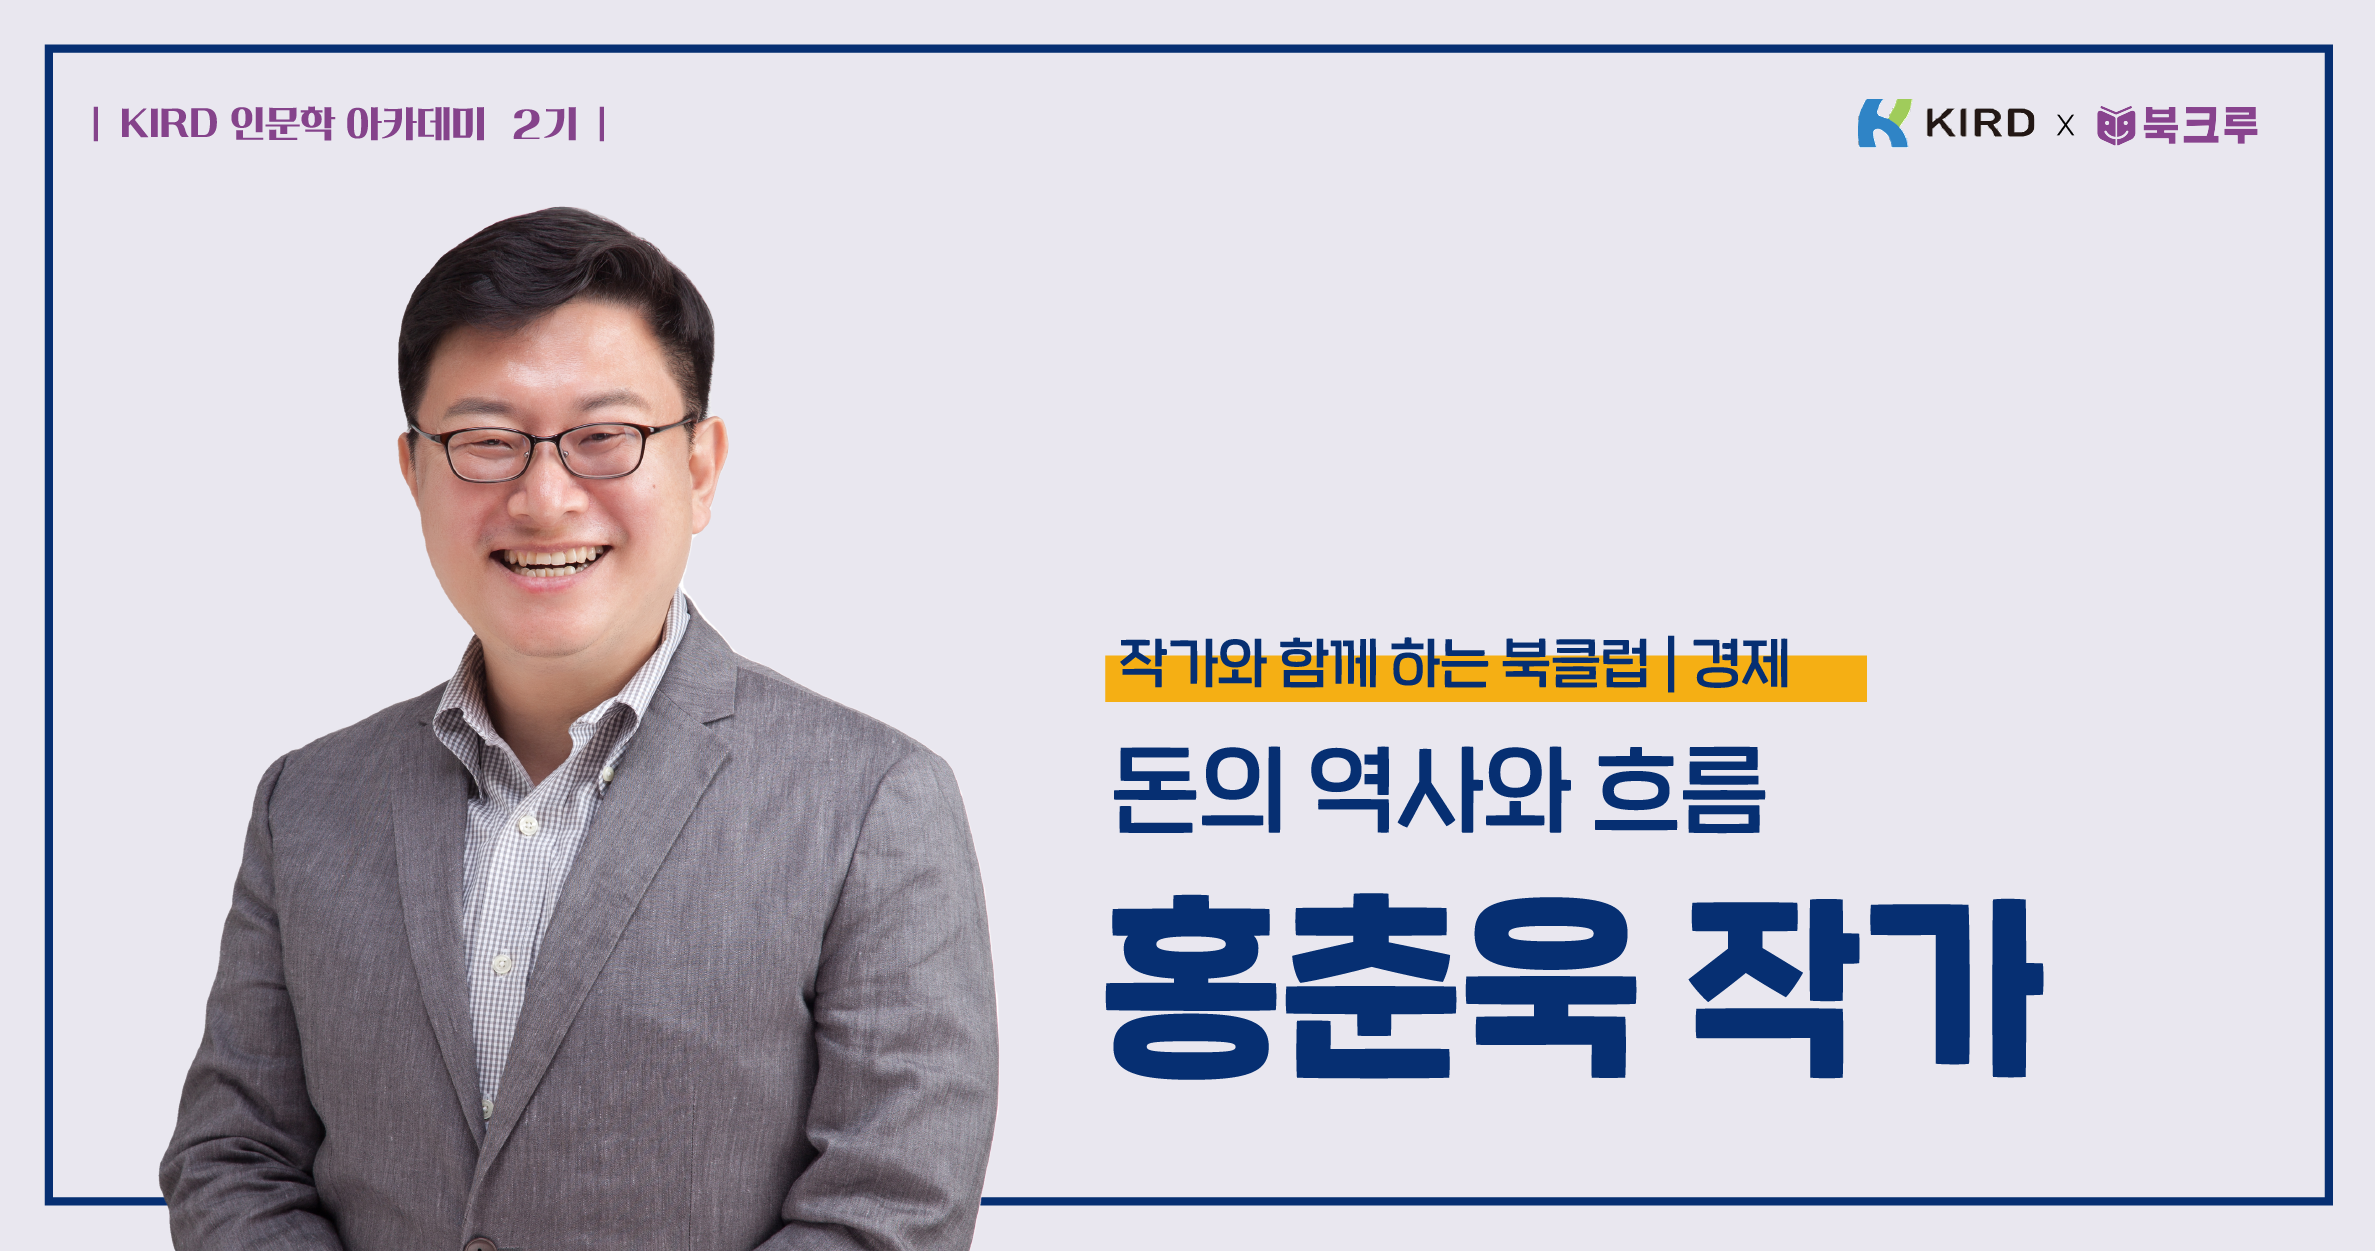 홍춘욱 작가카드 수정.png